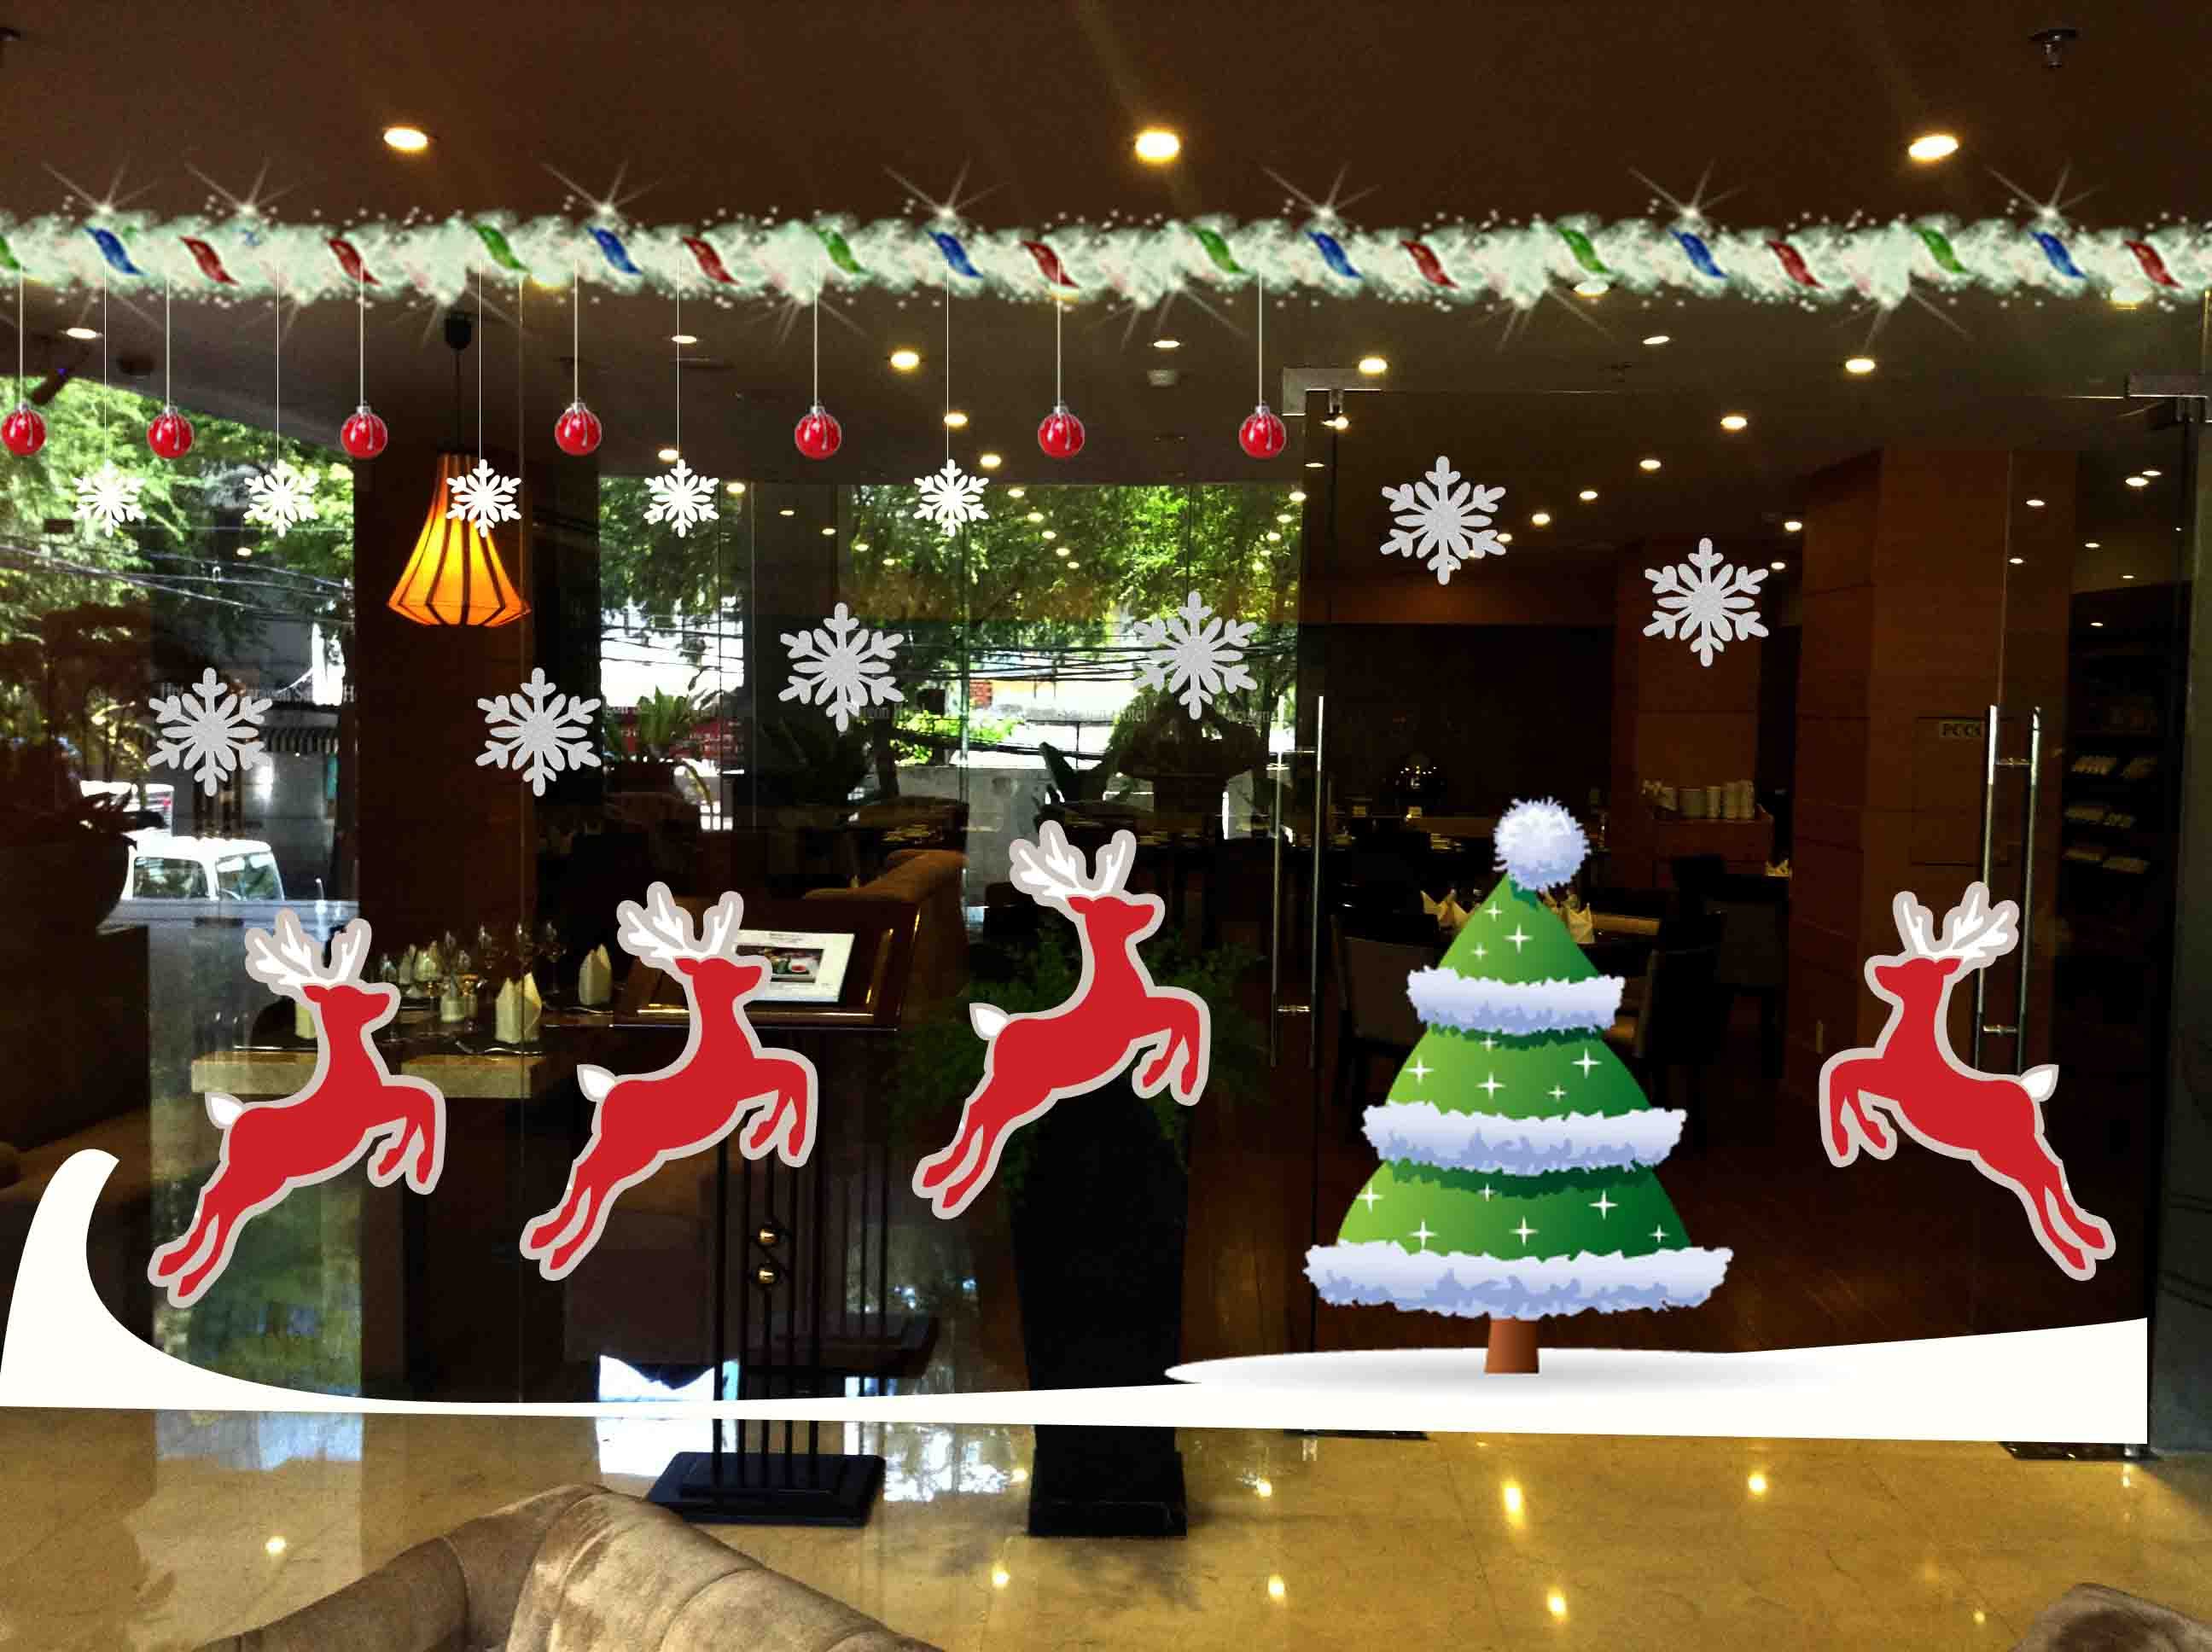 Các mẫu trang trí cây thông Noel trên cửa kính quán café